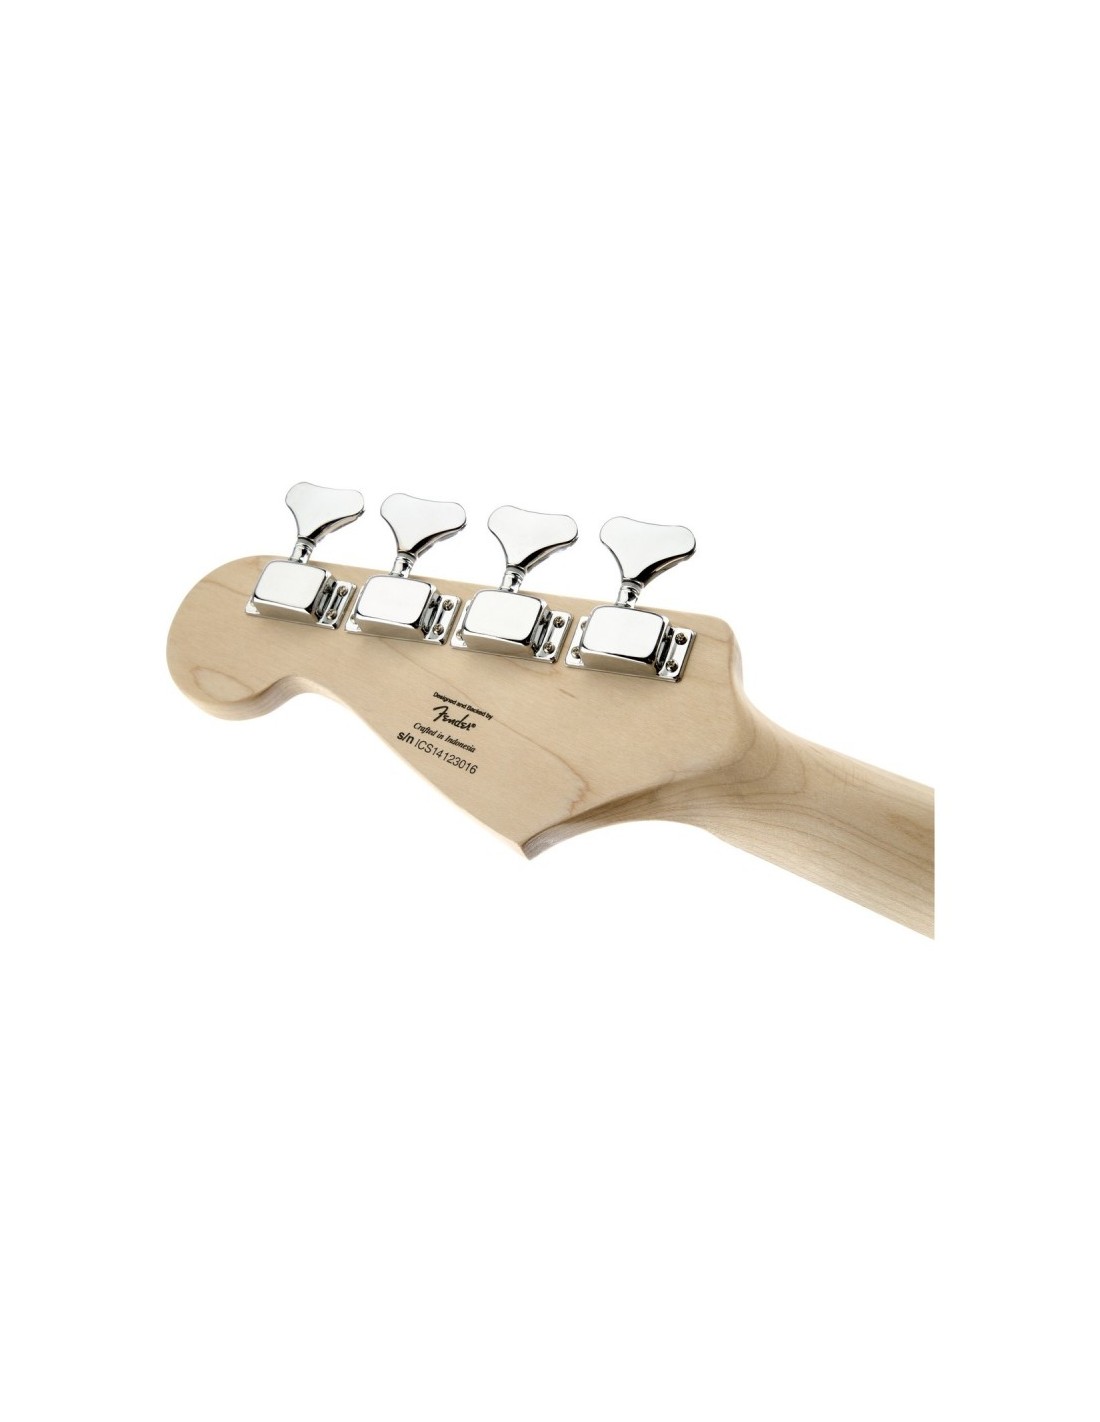 Simplificar punto Oceanía Fender Squier Bronco Bass TR